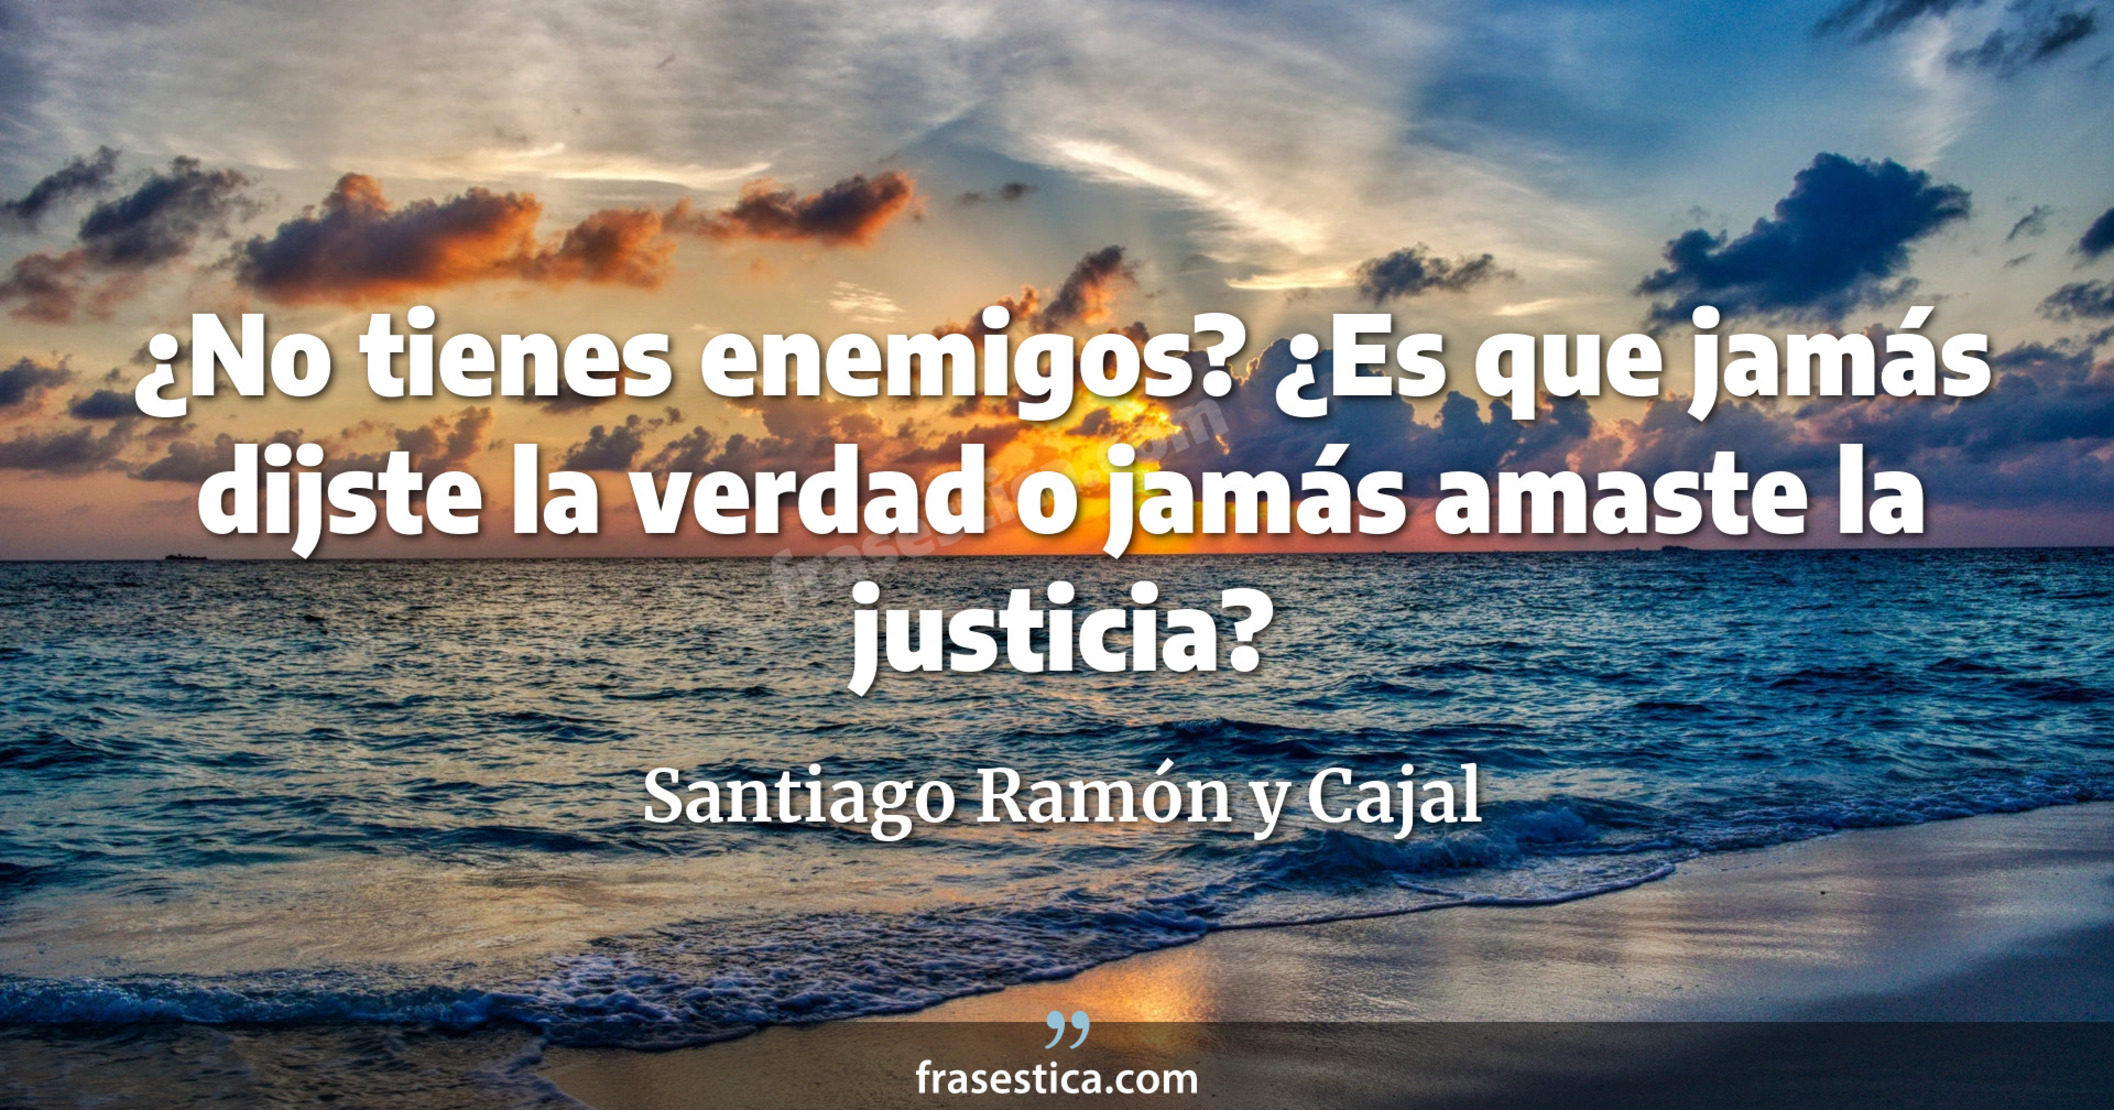 ¿No tienes enemigos? ¿Es que jamás dijste la verdad o jamás amaste la justicia? - Santiago Ramón y Cajal